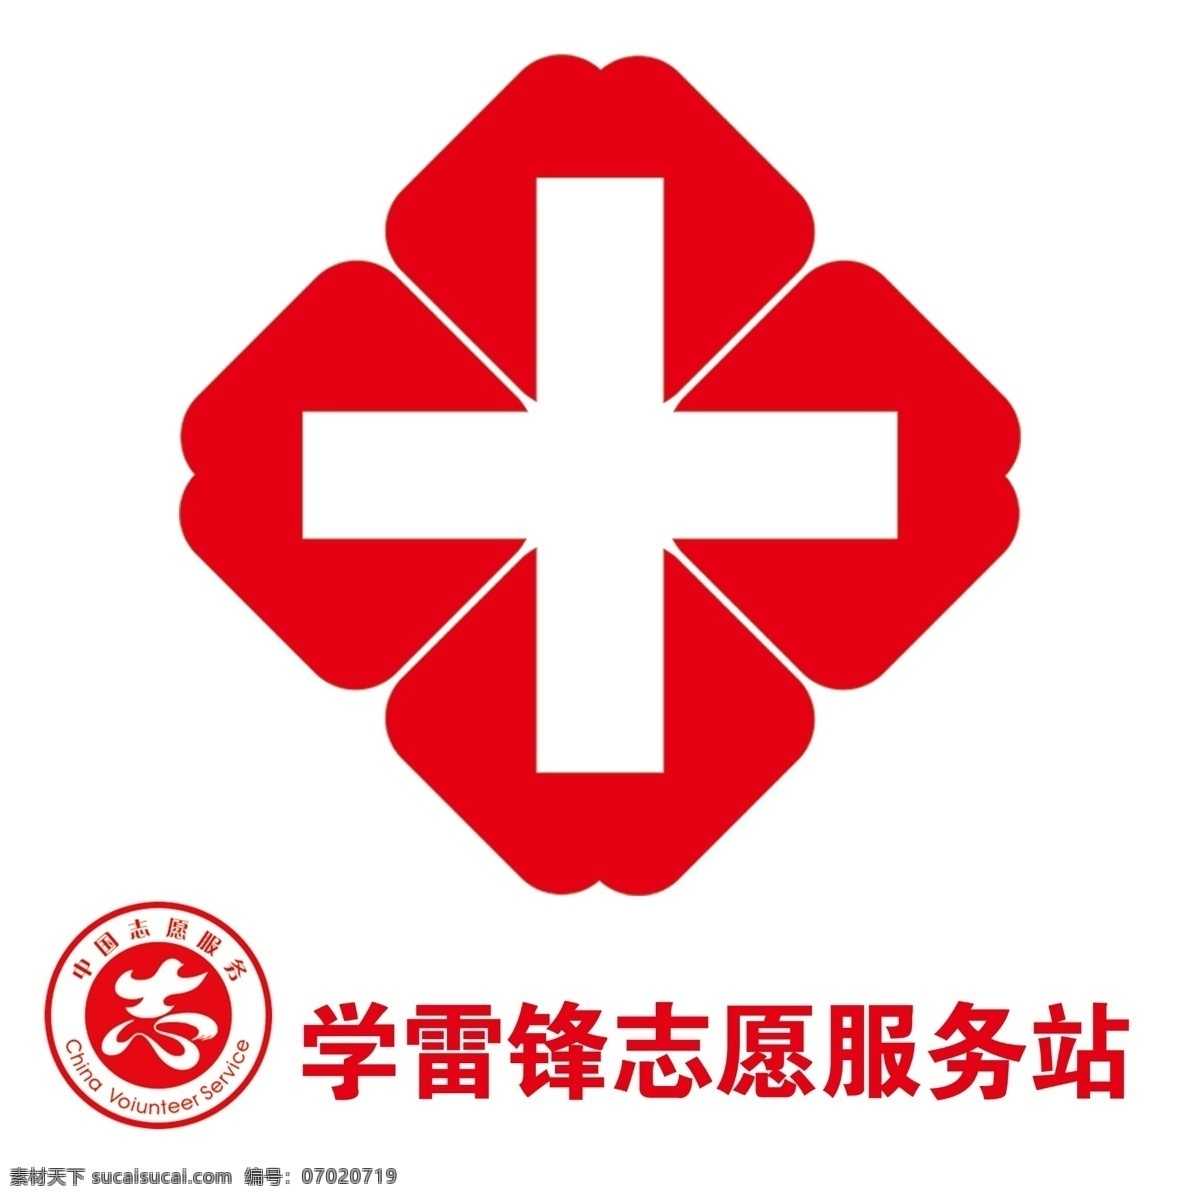 学雷锋 志愿 服务站 红十字 中国志愿服务 志愿服务站 标志 红十字精神 不干胶 logo设计